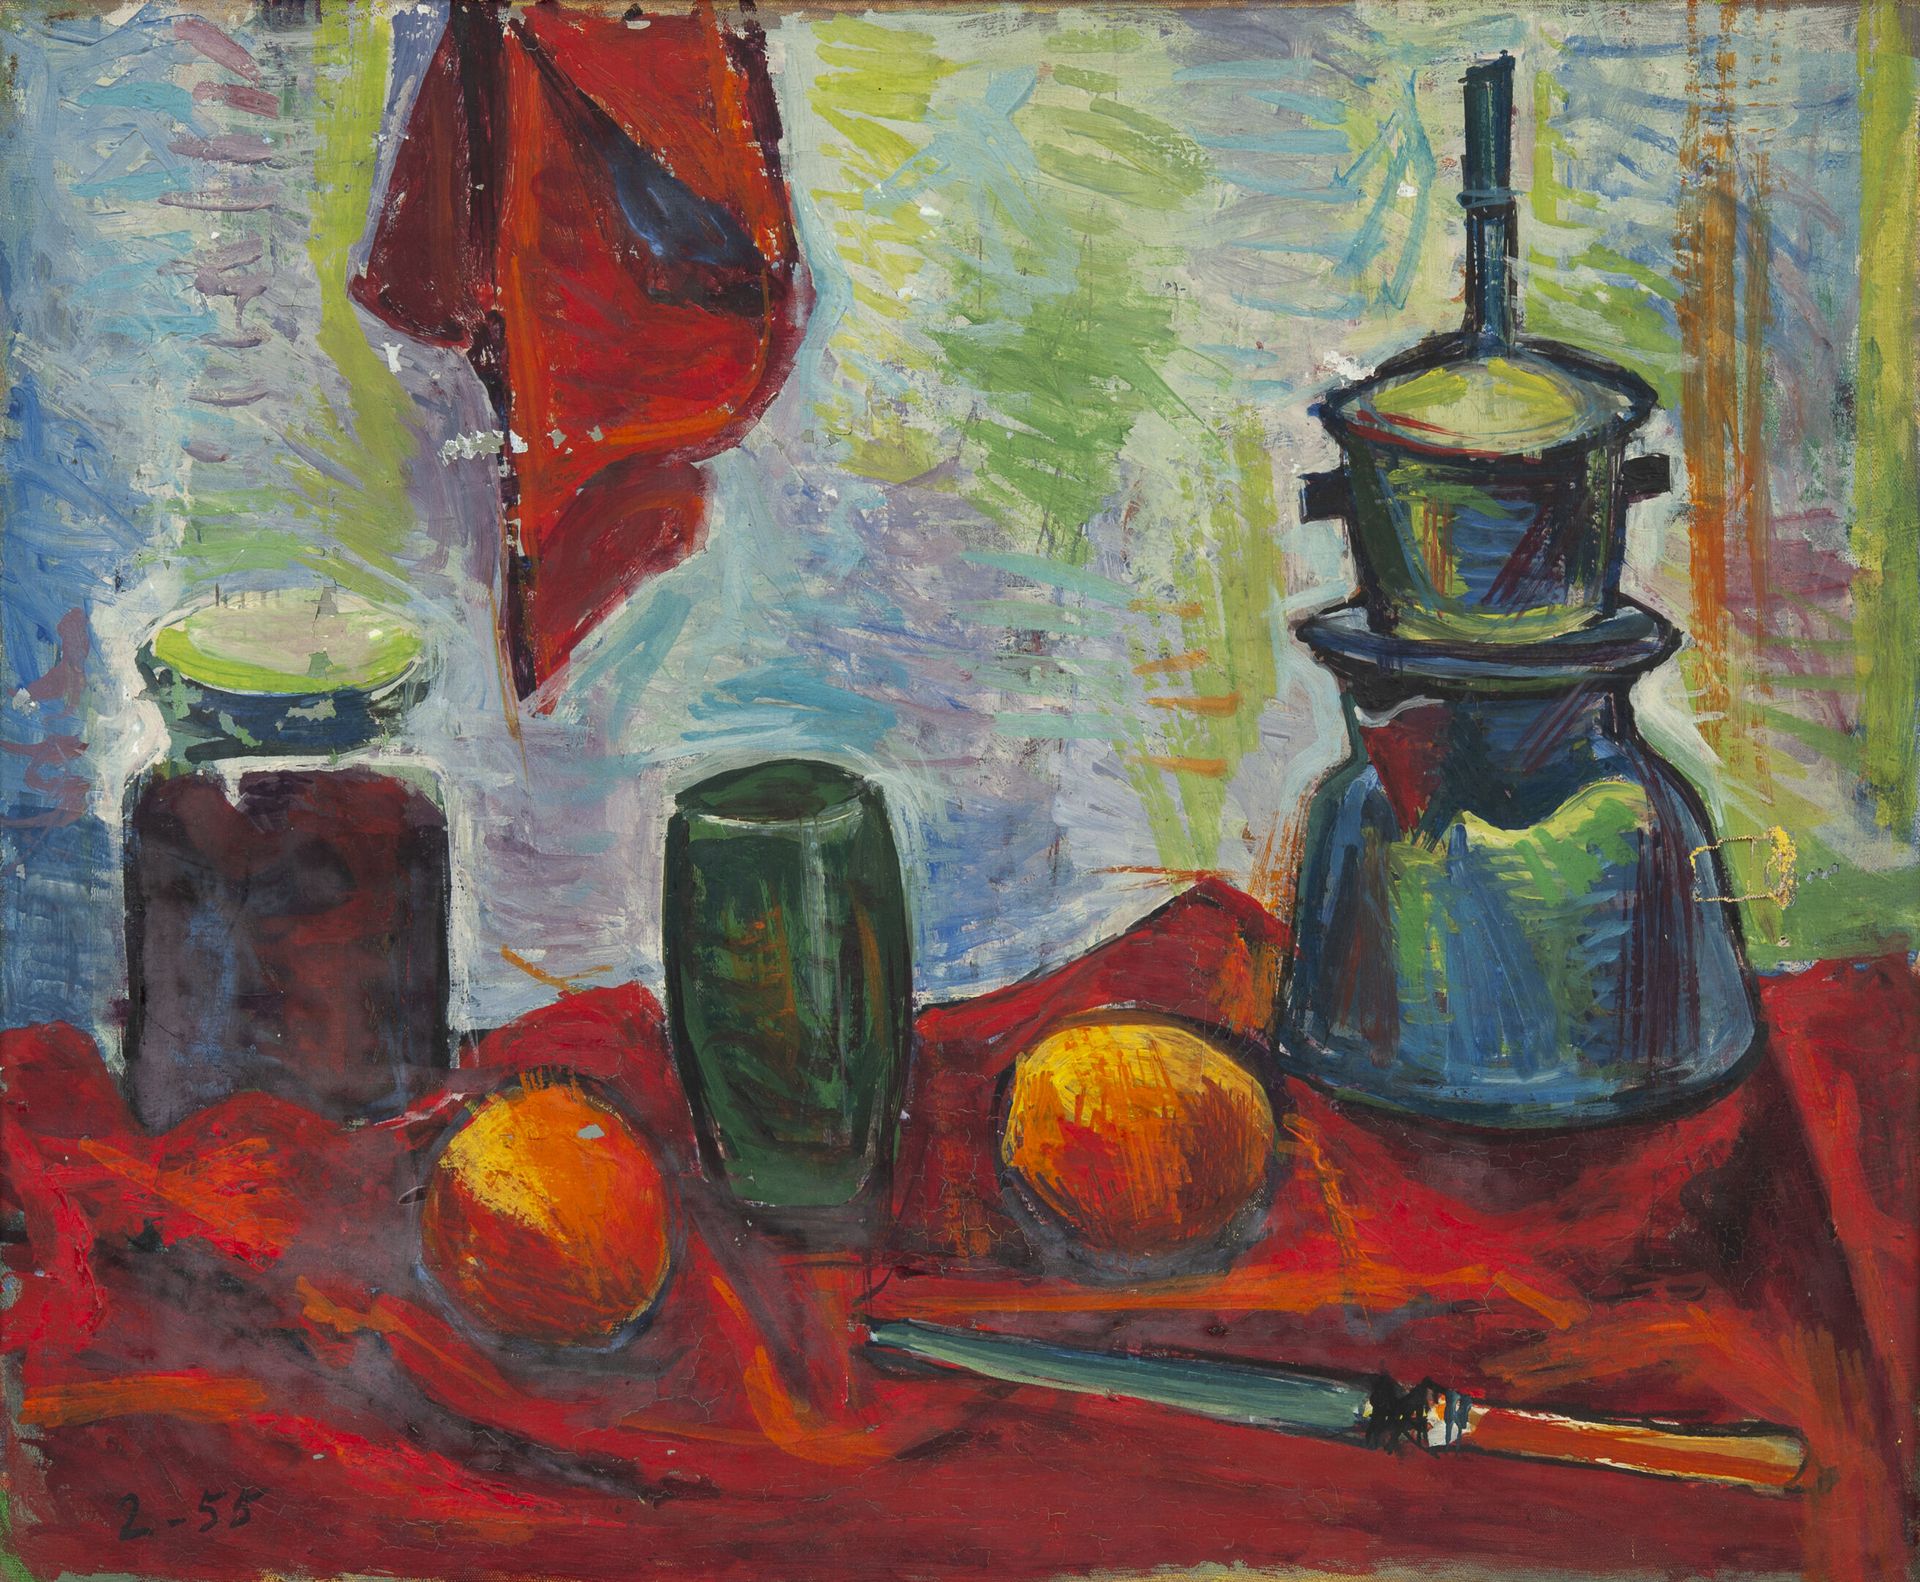 Alberto FABRA (1920-2011) Bodegón con tetera y frutas, 1955.

Óleo sobre lienzo.&hellip;